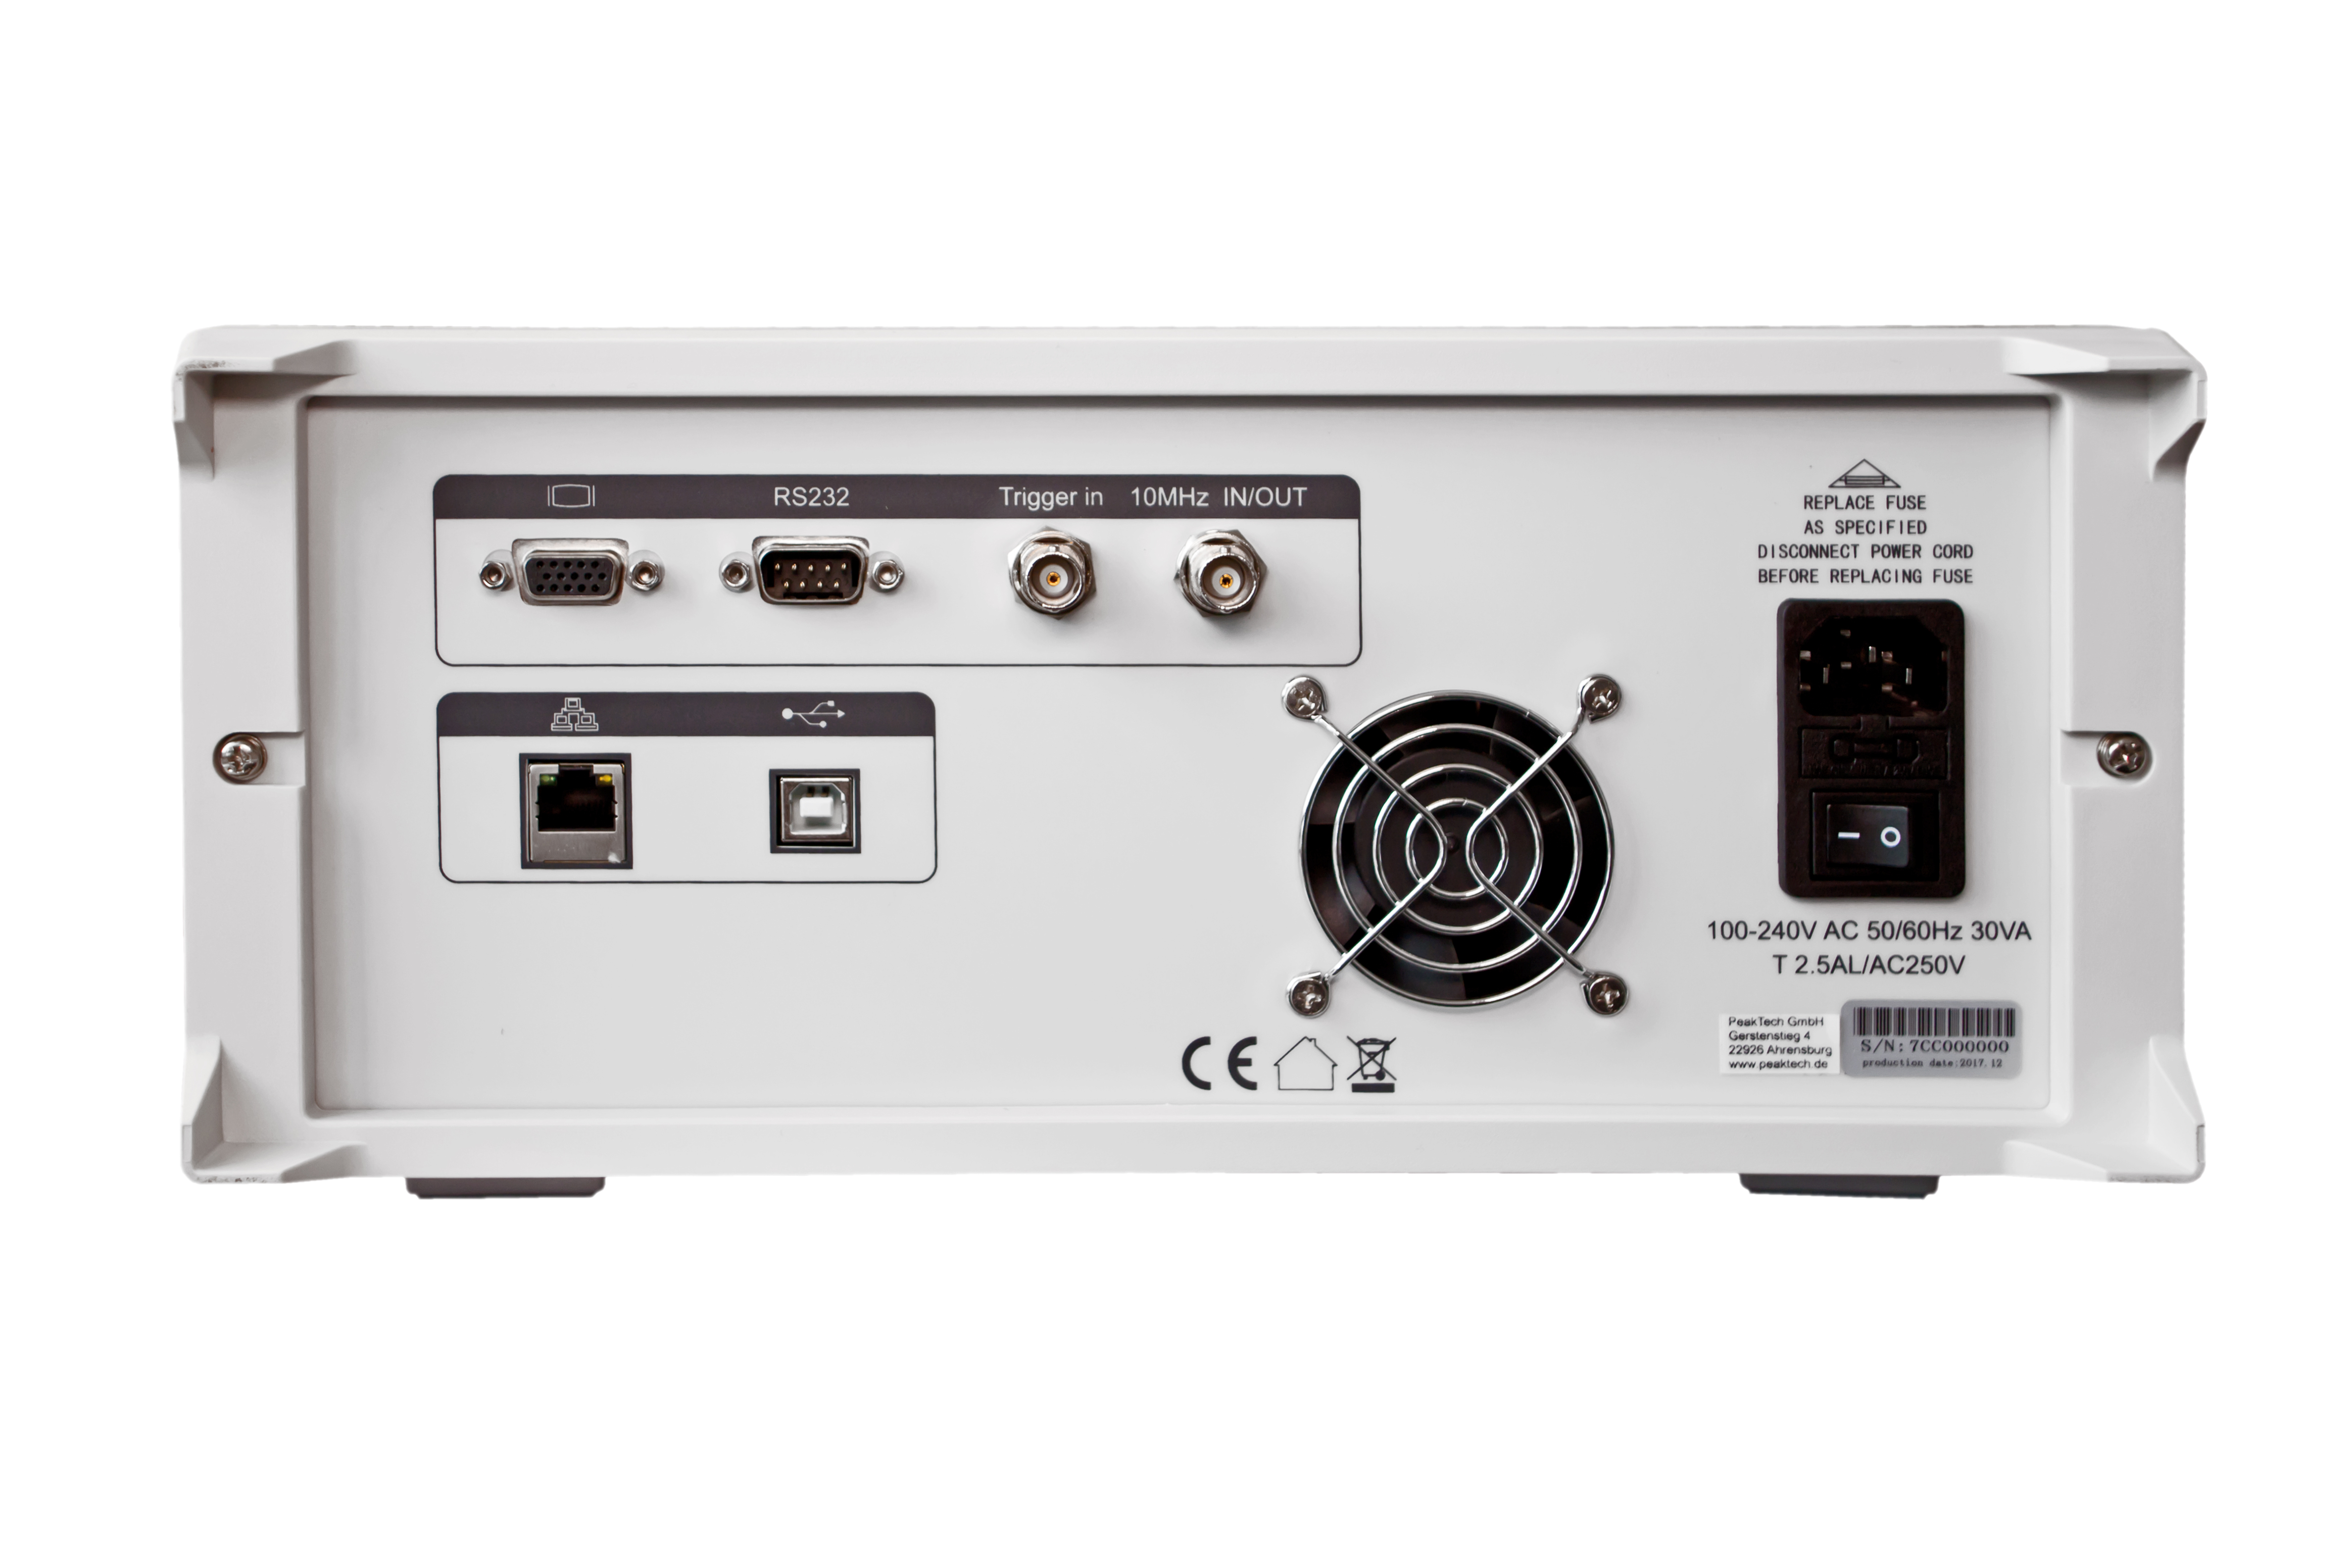 «PeakTech® P 4130-1» 1,5 GHz Spectrum Analyzer ~ mit TFT-Anzeige, LAN / USB